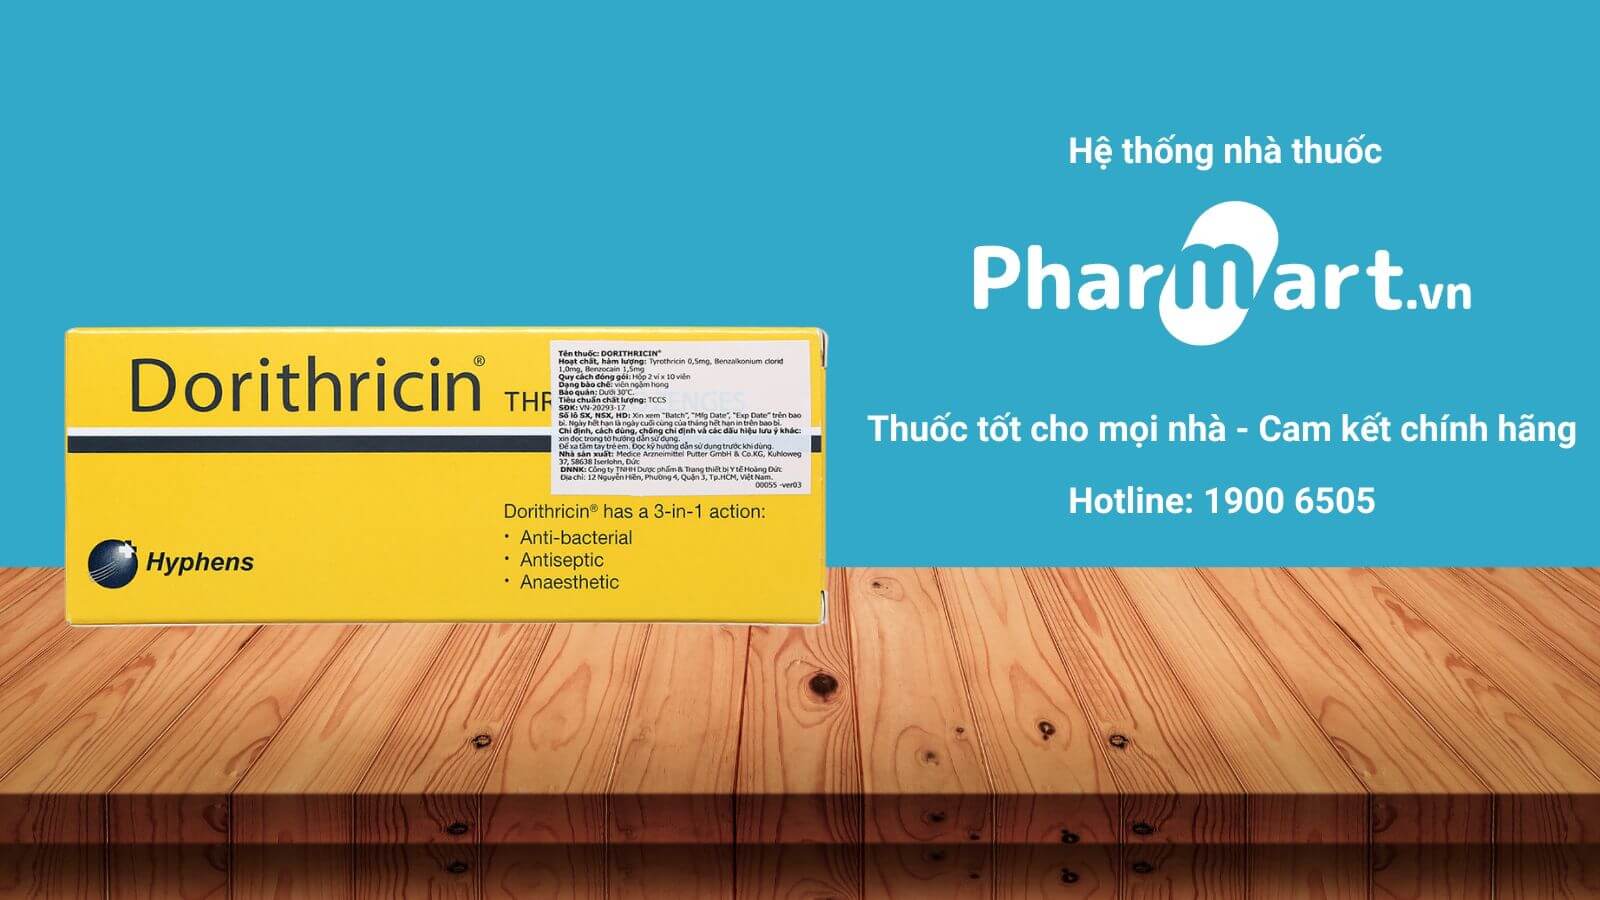 Mua ngay Dorithricin tại nhà thuốc Pharmart.vn